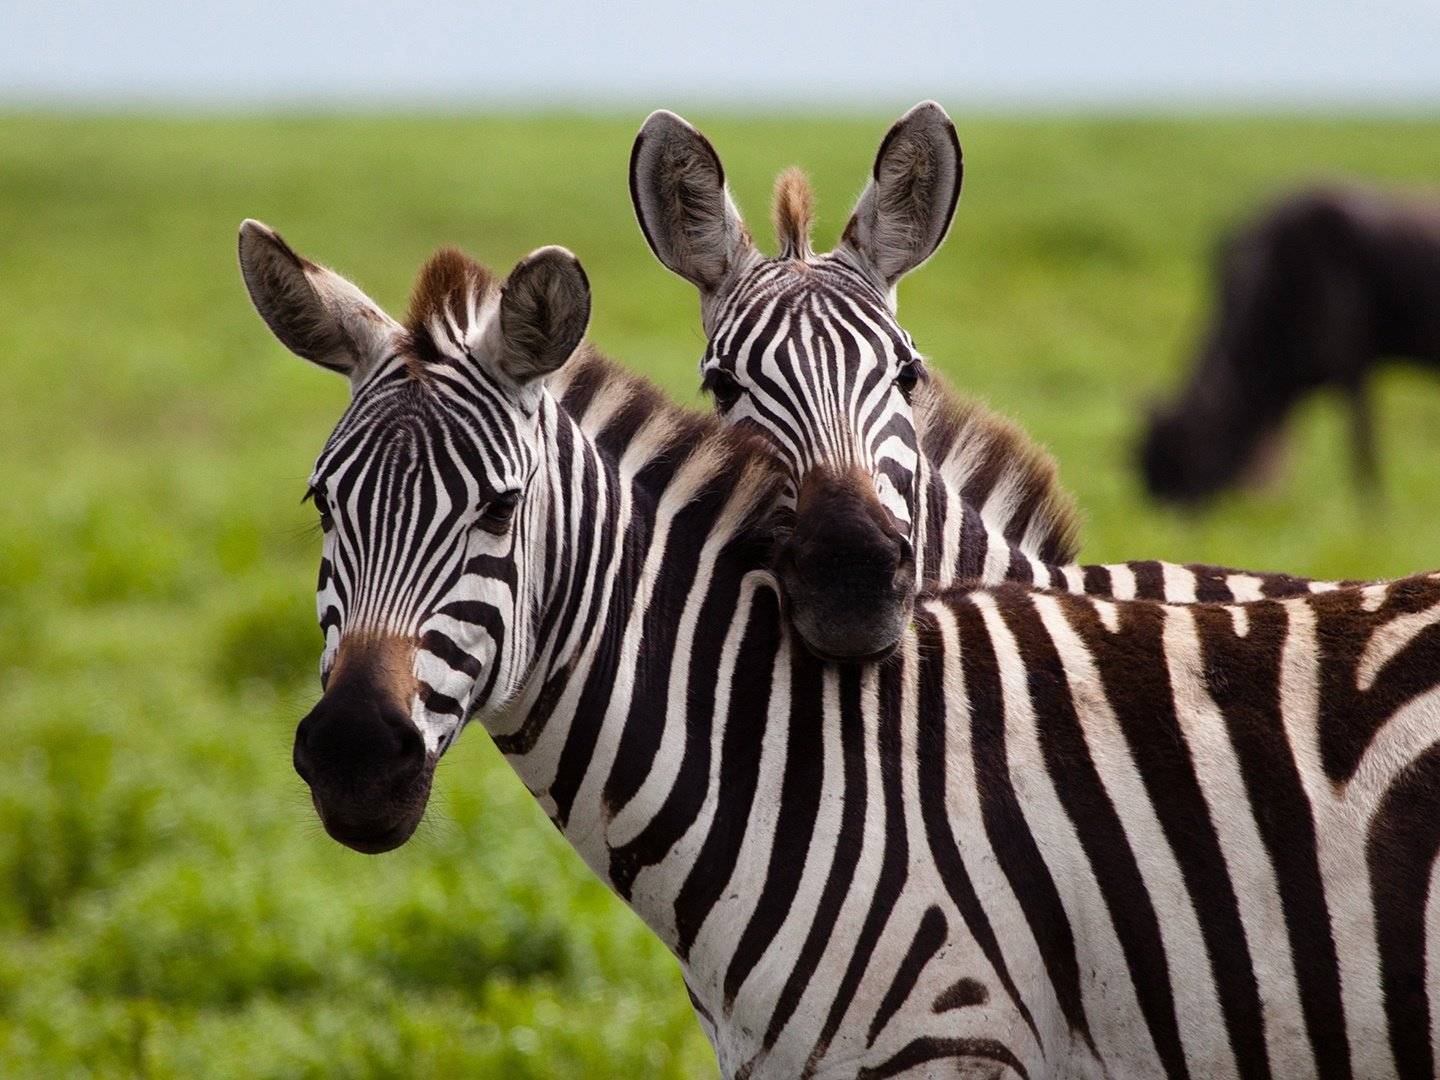 Tarangire – Serengeti National Park